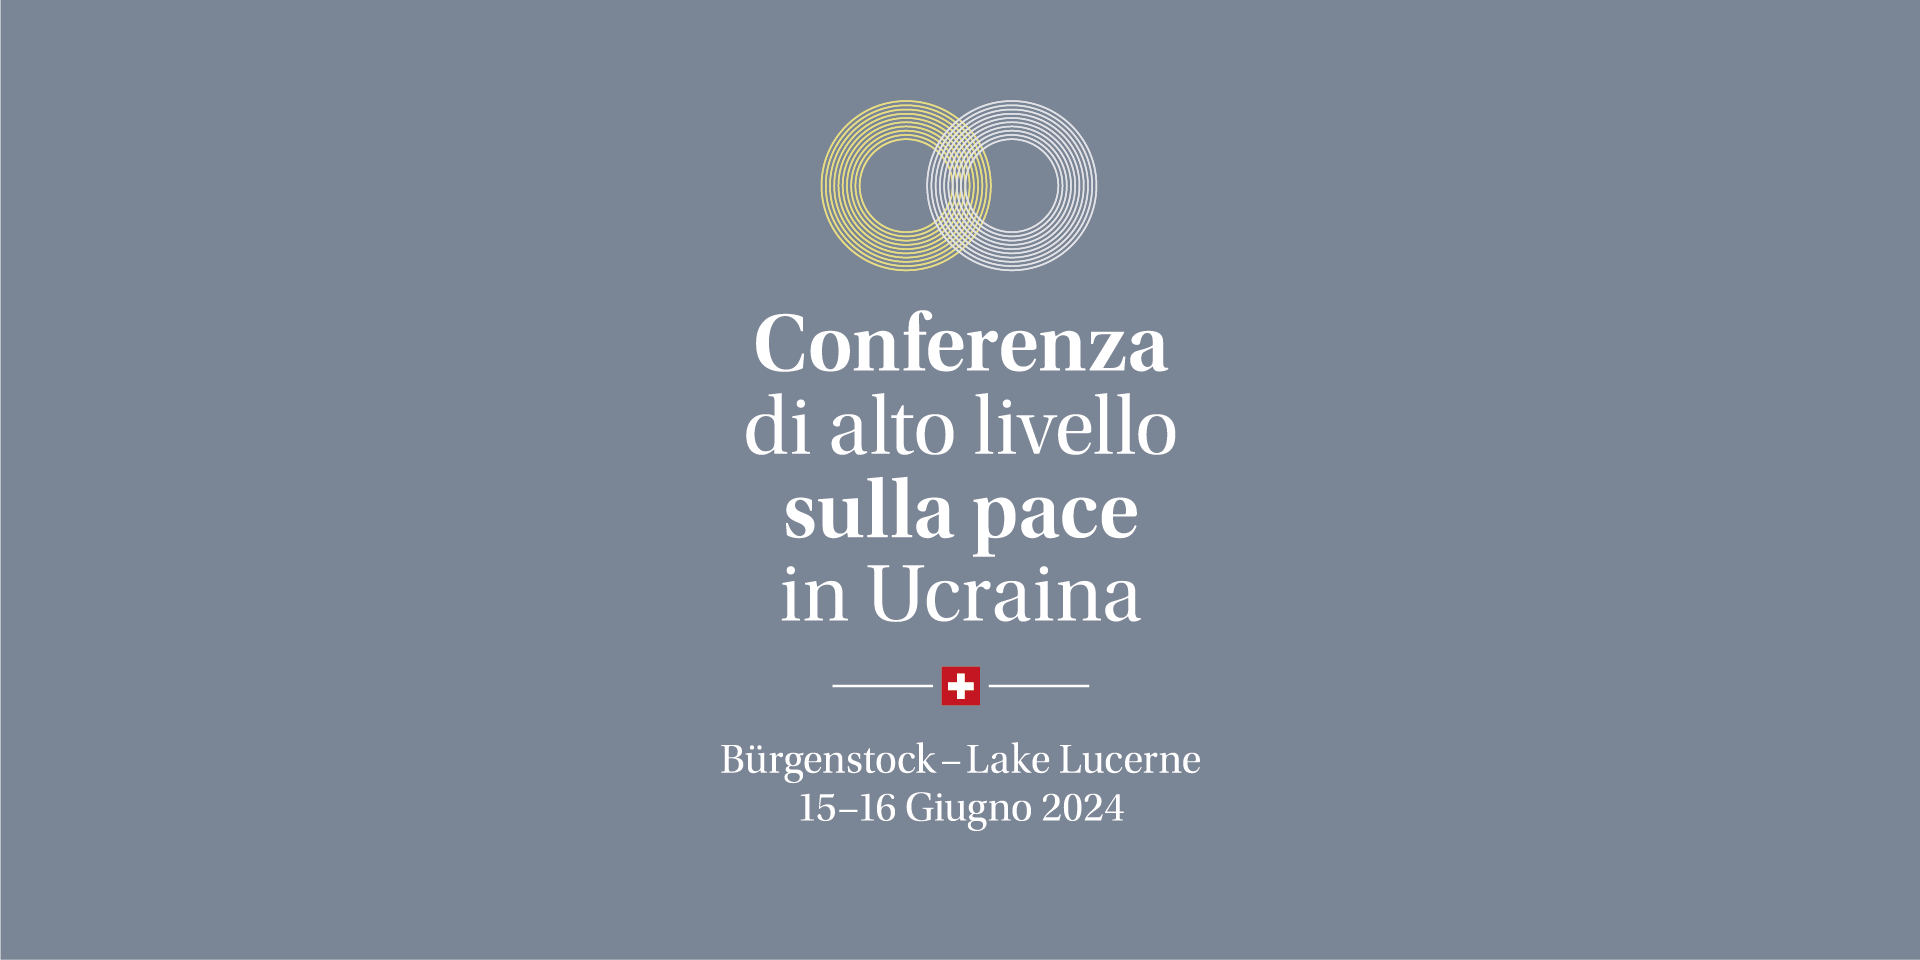 Il logo della conferenza di alto livello sulla pace in Ucraina, Bürgenstock - Lake Lucerne, 15-16 Giugno 2024.